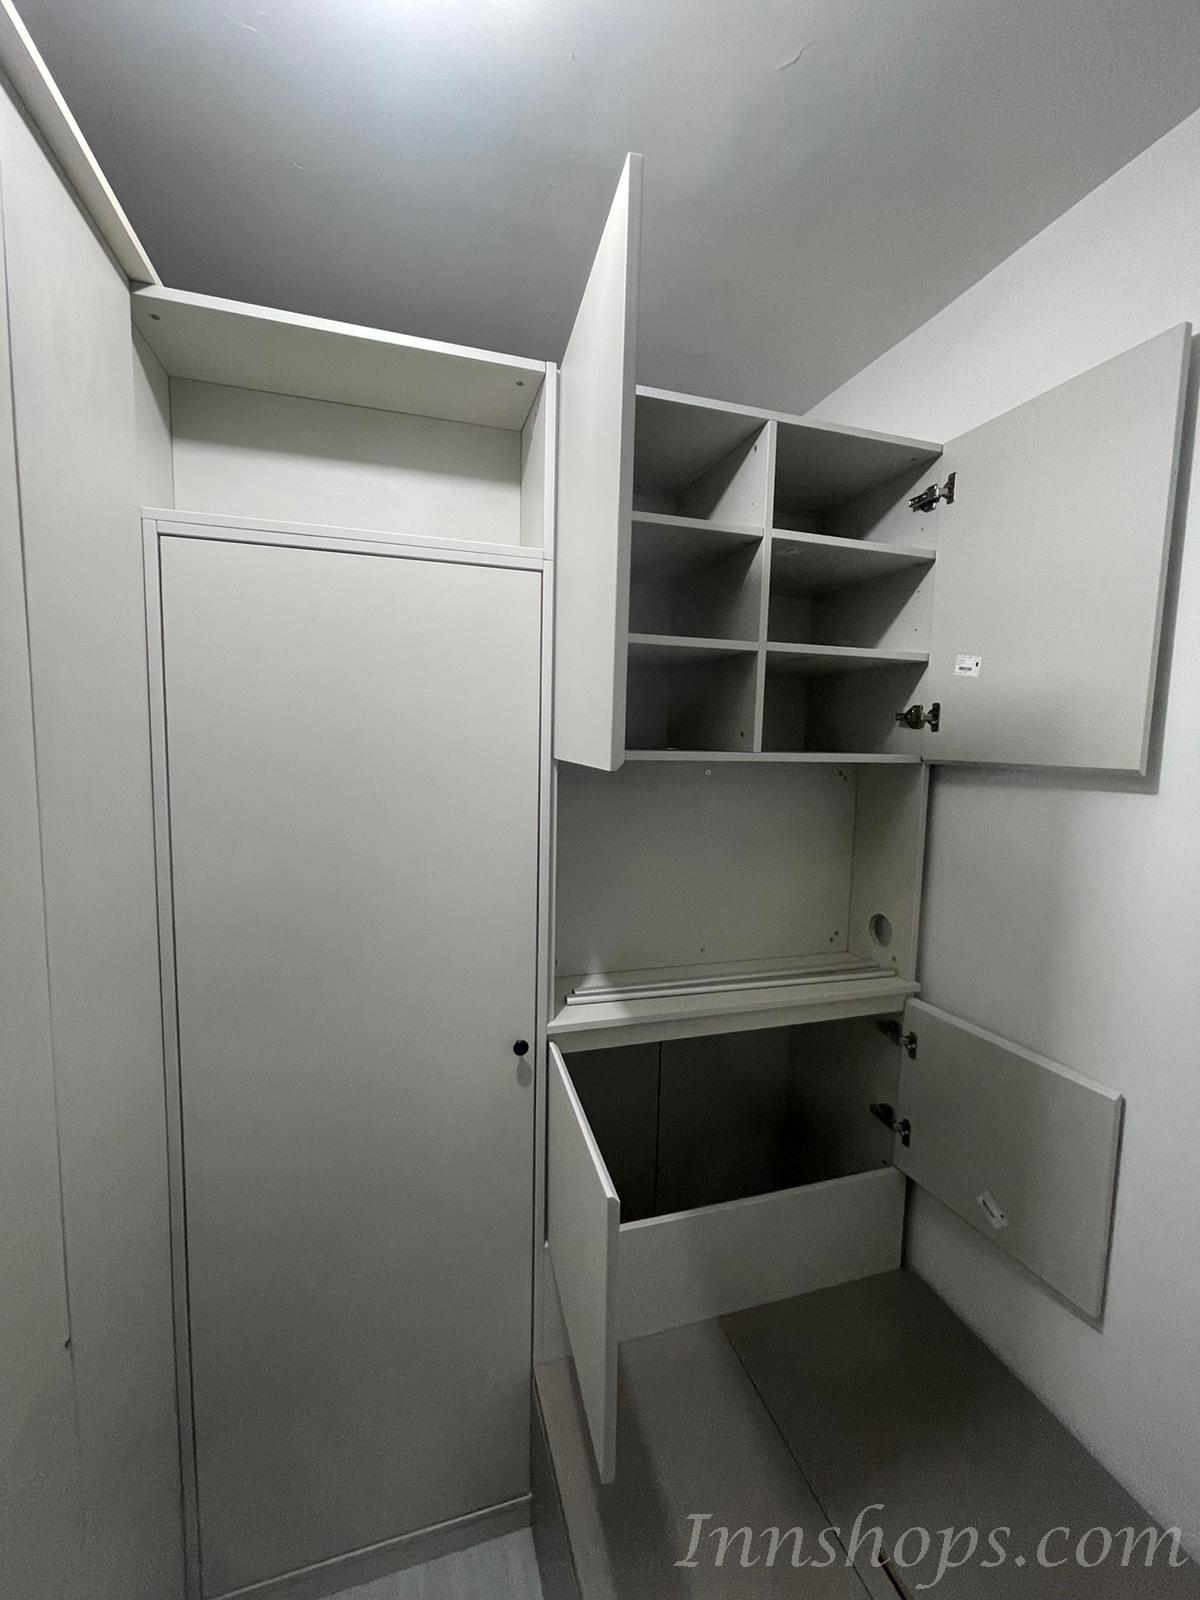 訂造雙面櫃+儲物床書枱套裝間房(IS9138)